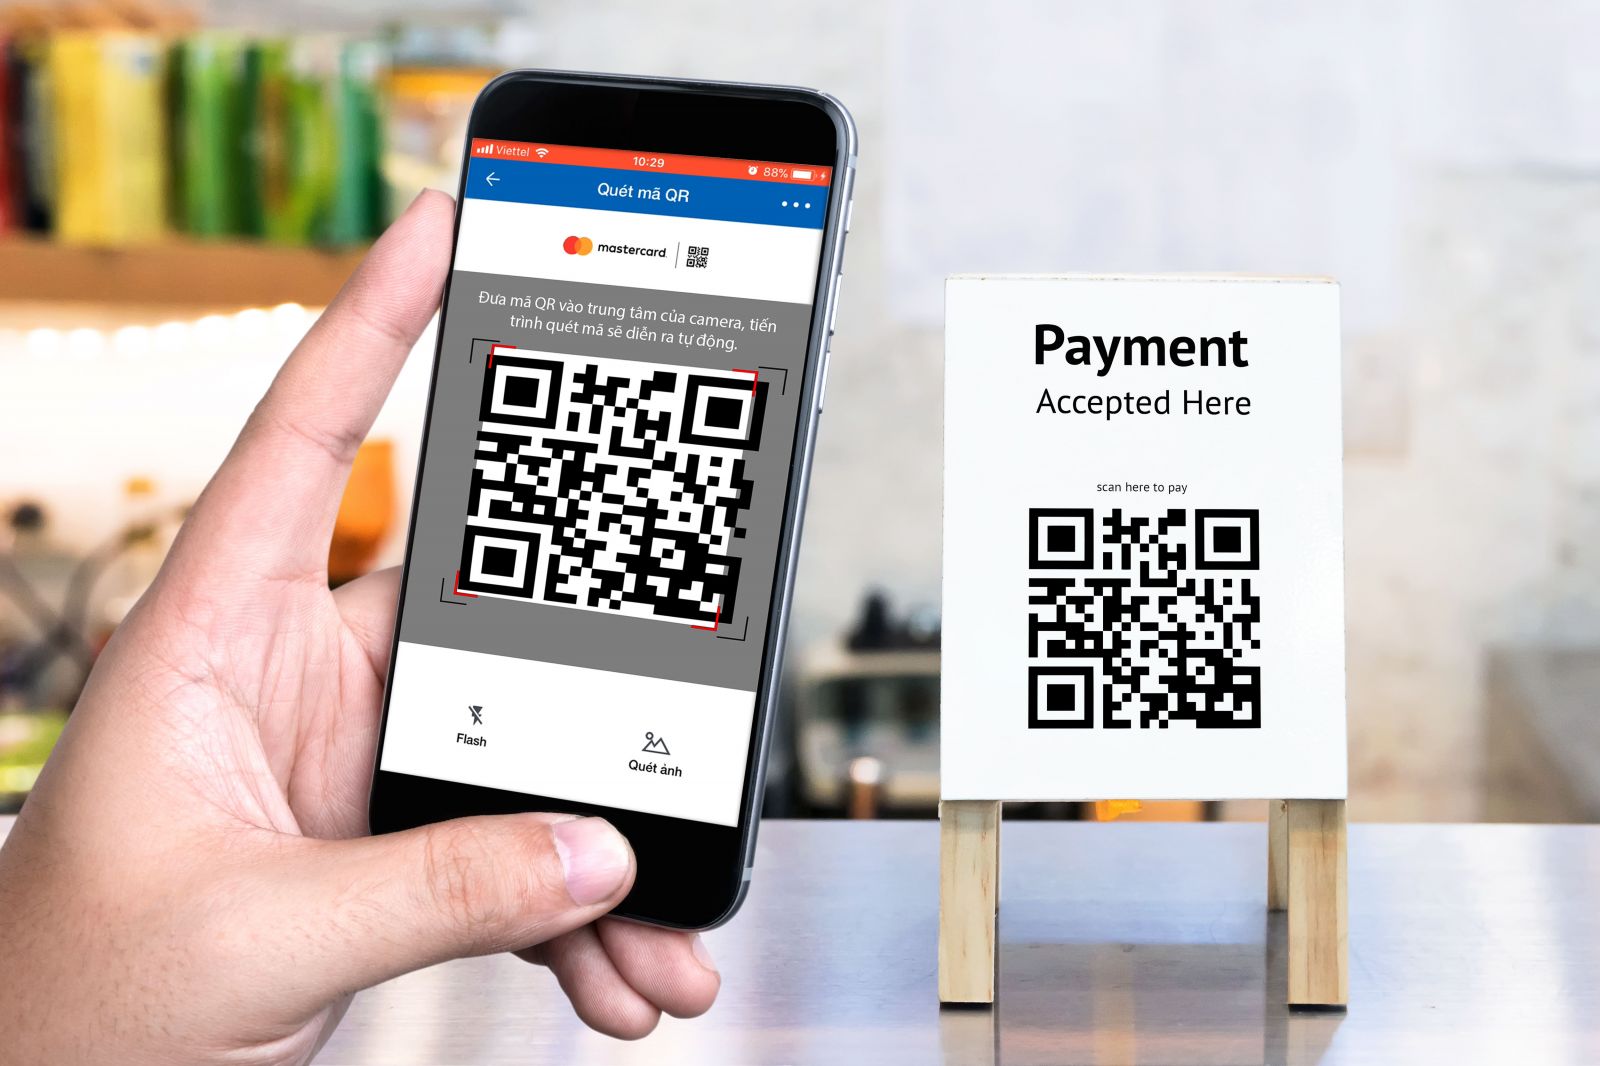 SCB QR Easy - phương thức thanh toán thông qua mã QR trên ứng dụng Mobile Banking bằng nguồn tiền từ Tài khoản thanh toán hoặc từ Tài khoản thẻ tín dụng quốc tế Mastercard.